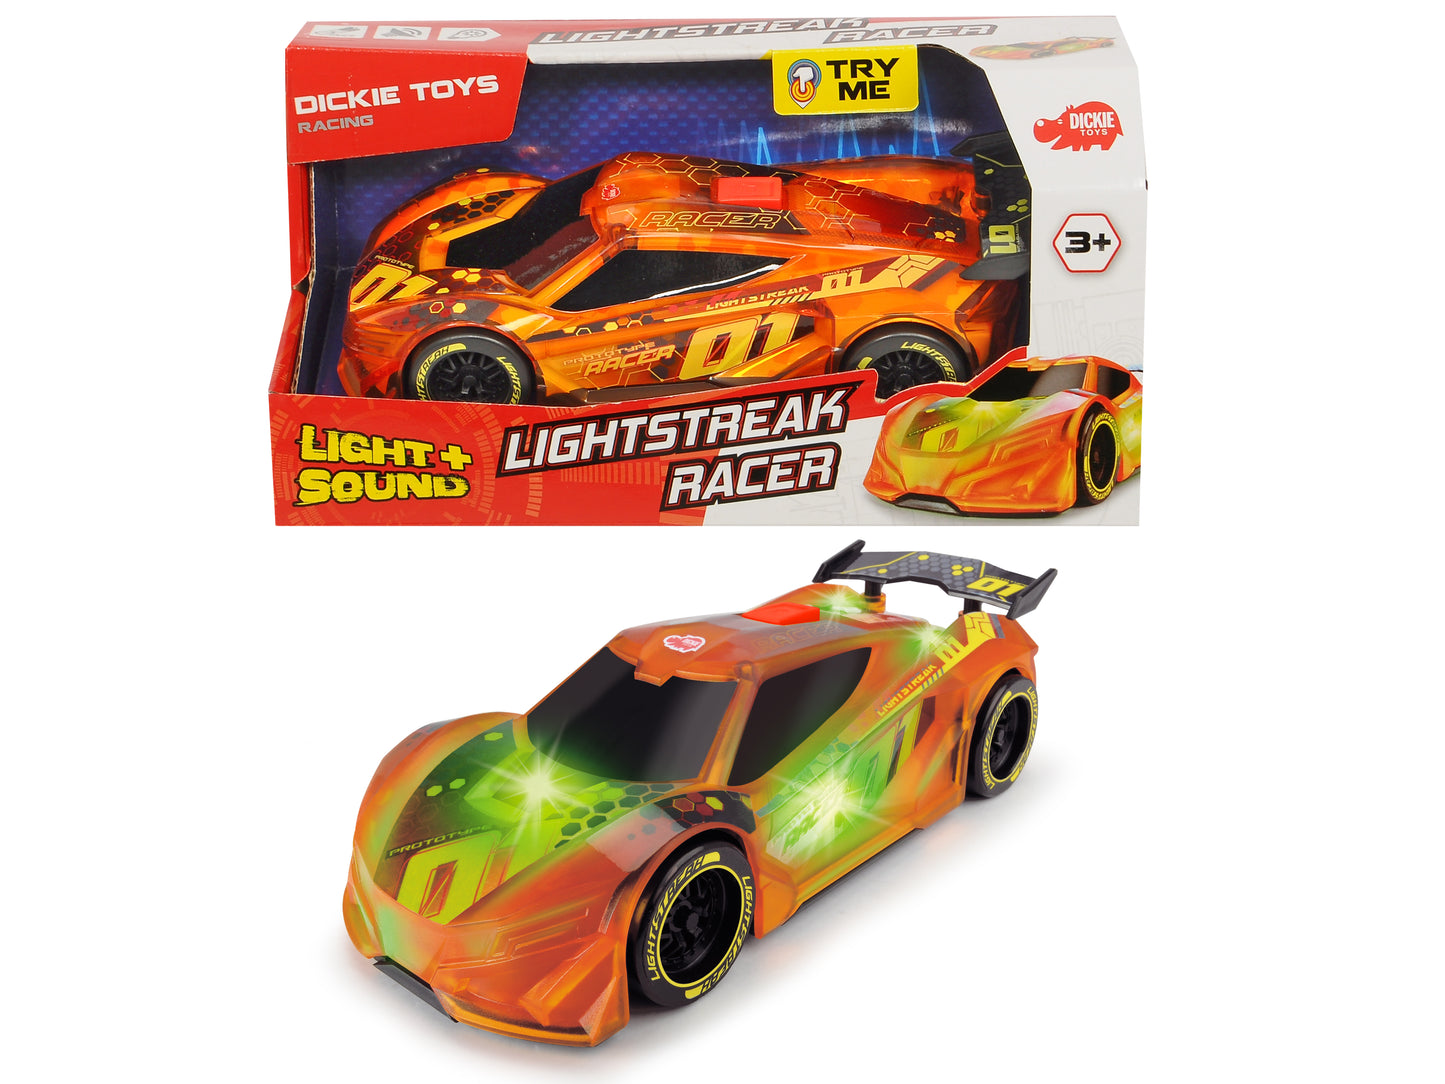 lightstreak racer